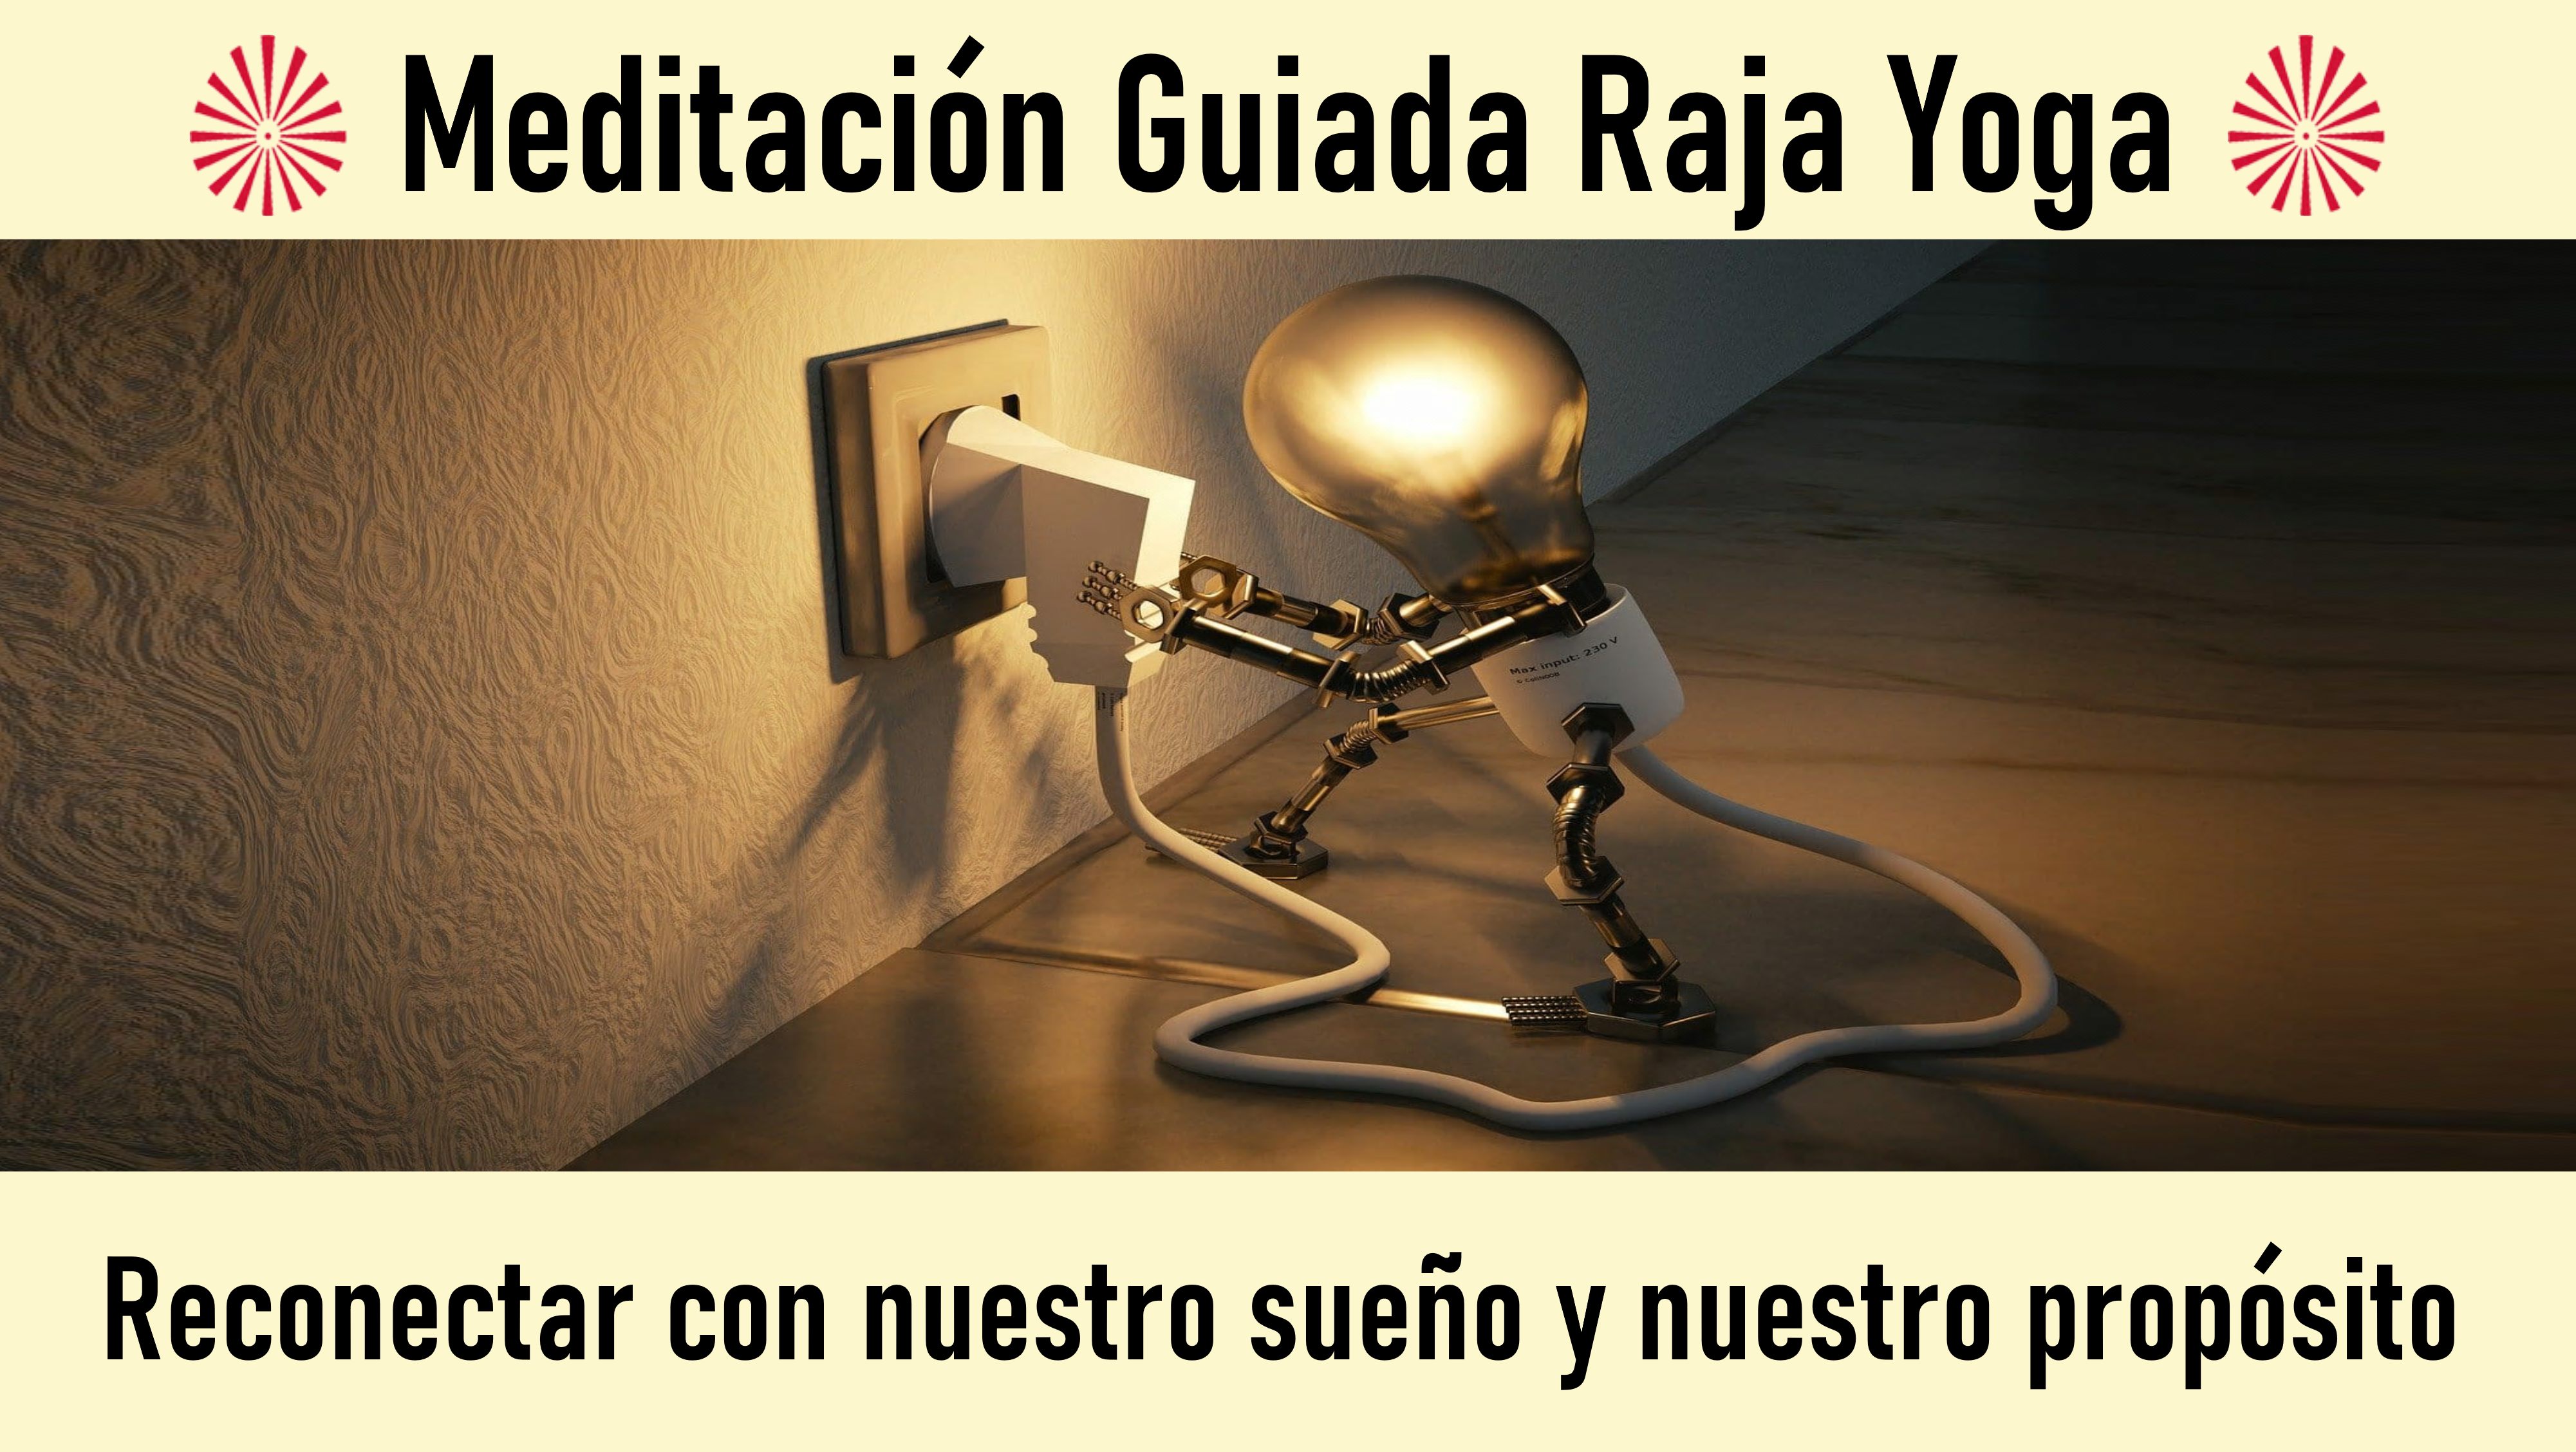 Meditación Raja Yoga: Reconectar con nuestro sueño y nuestro propósito(15 Julio 2020) On-line desde Sevilla